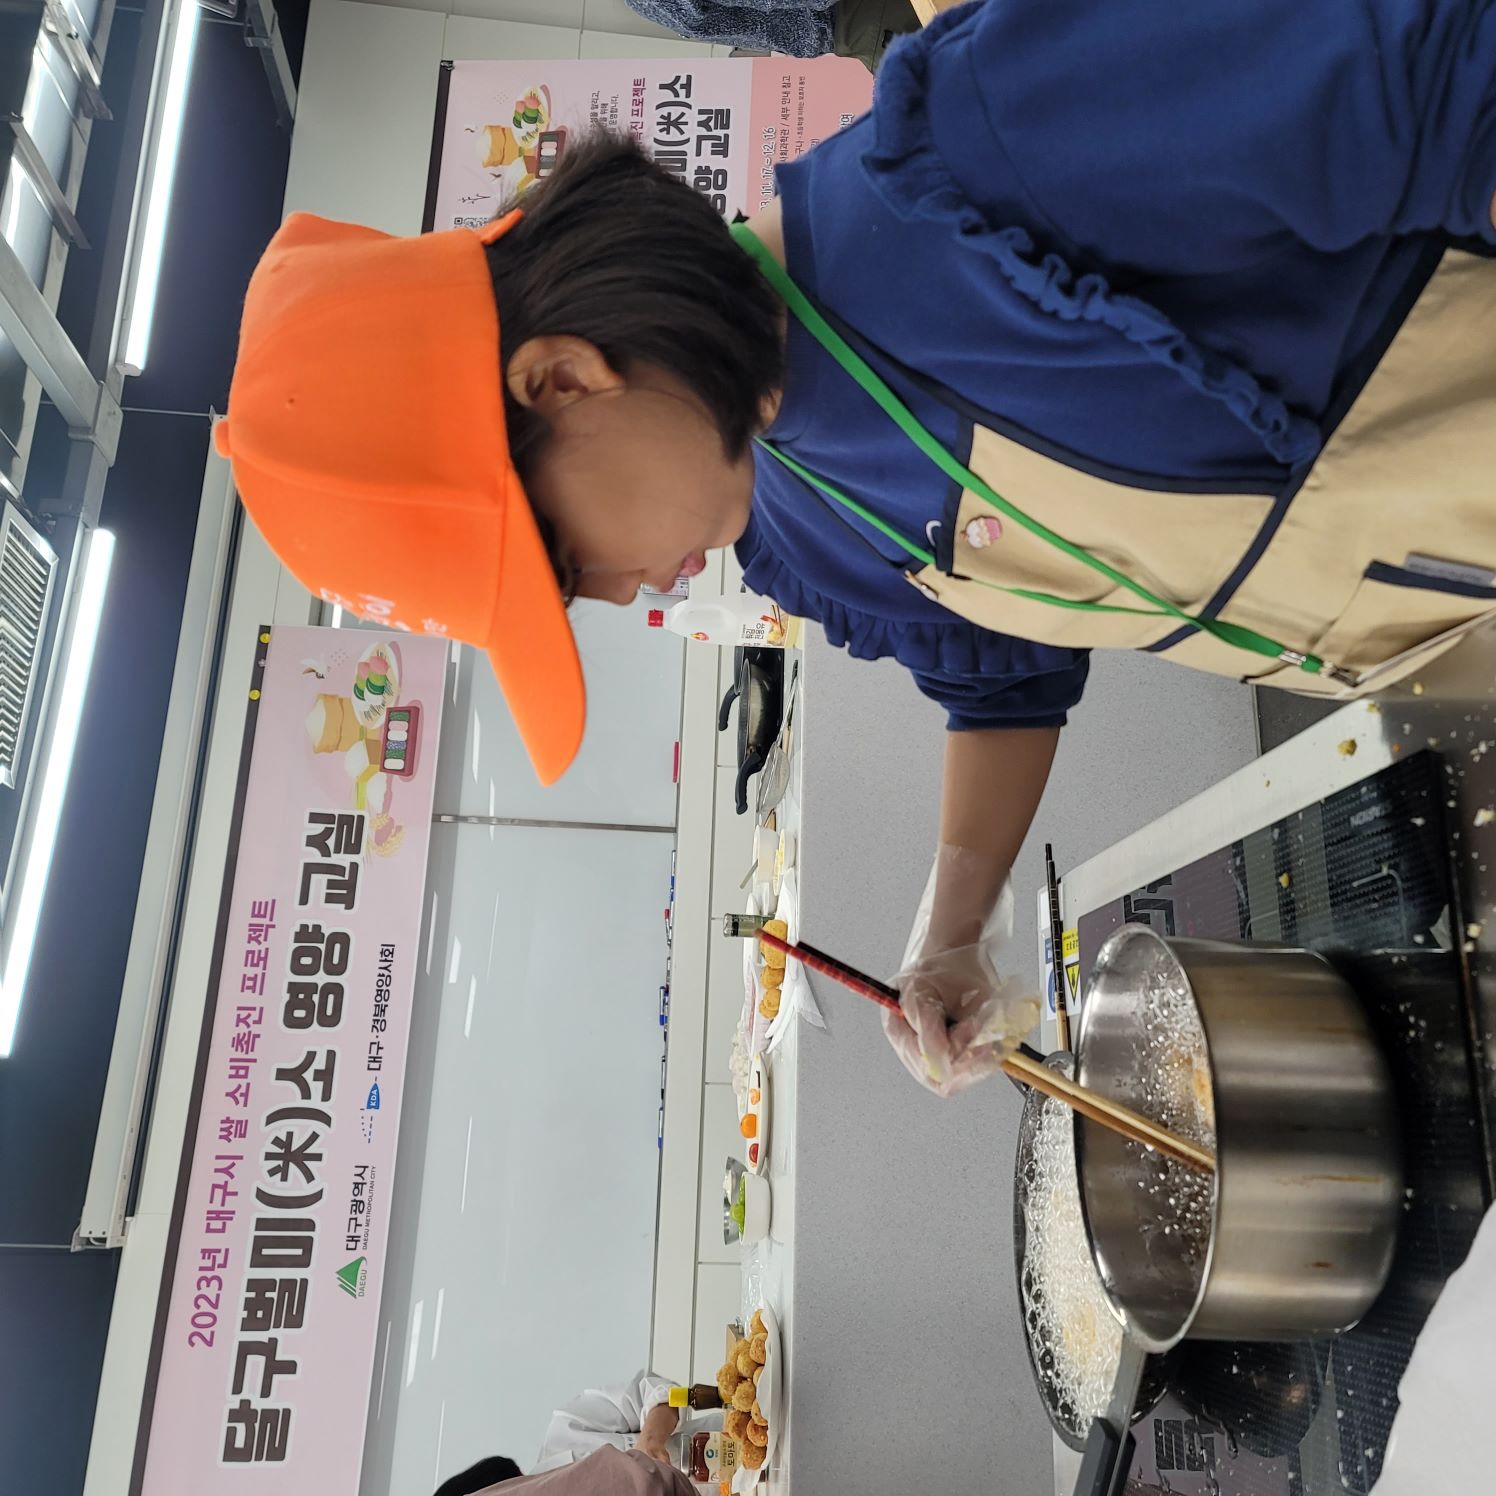 찬밥아란치니 튀기기